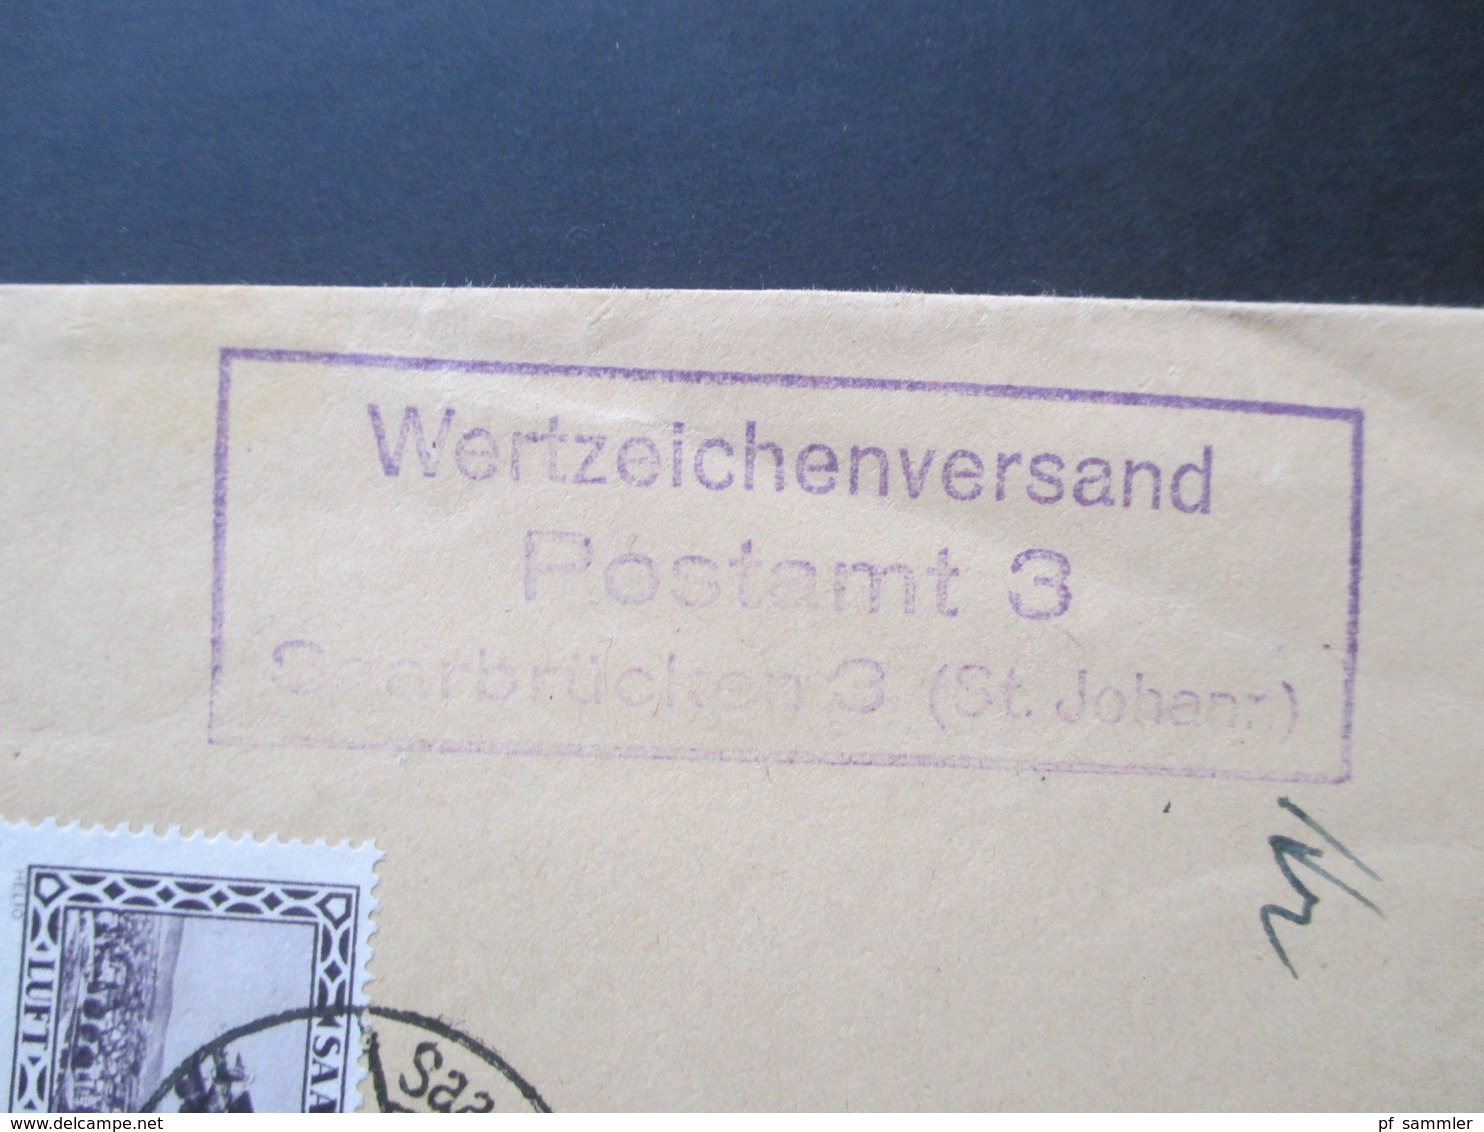 Saargebiet 1930 Flugpostmarken Nr. 126 / 127 MiF Einschreiben Saarbrücken 3 (St. Johann) Nach München Wertzeichenversand - Cartas & Documentos